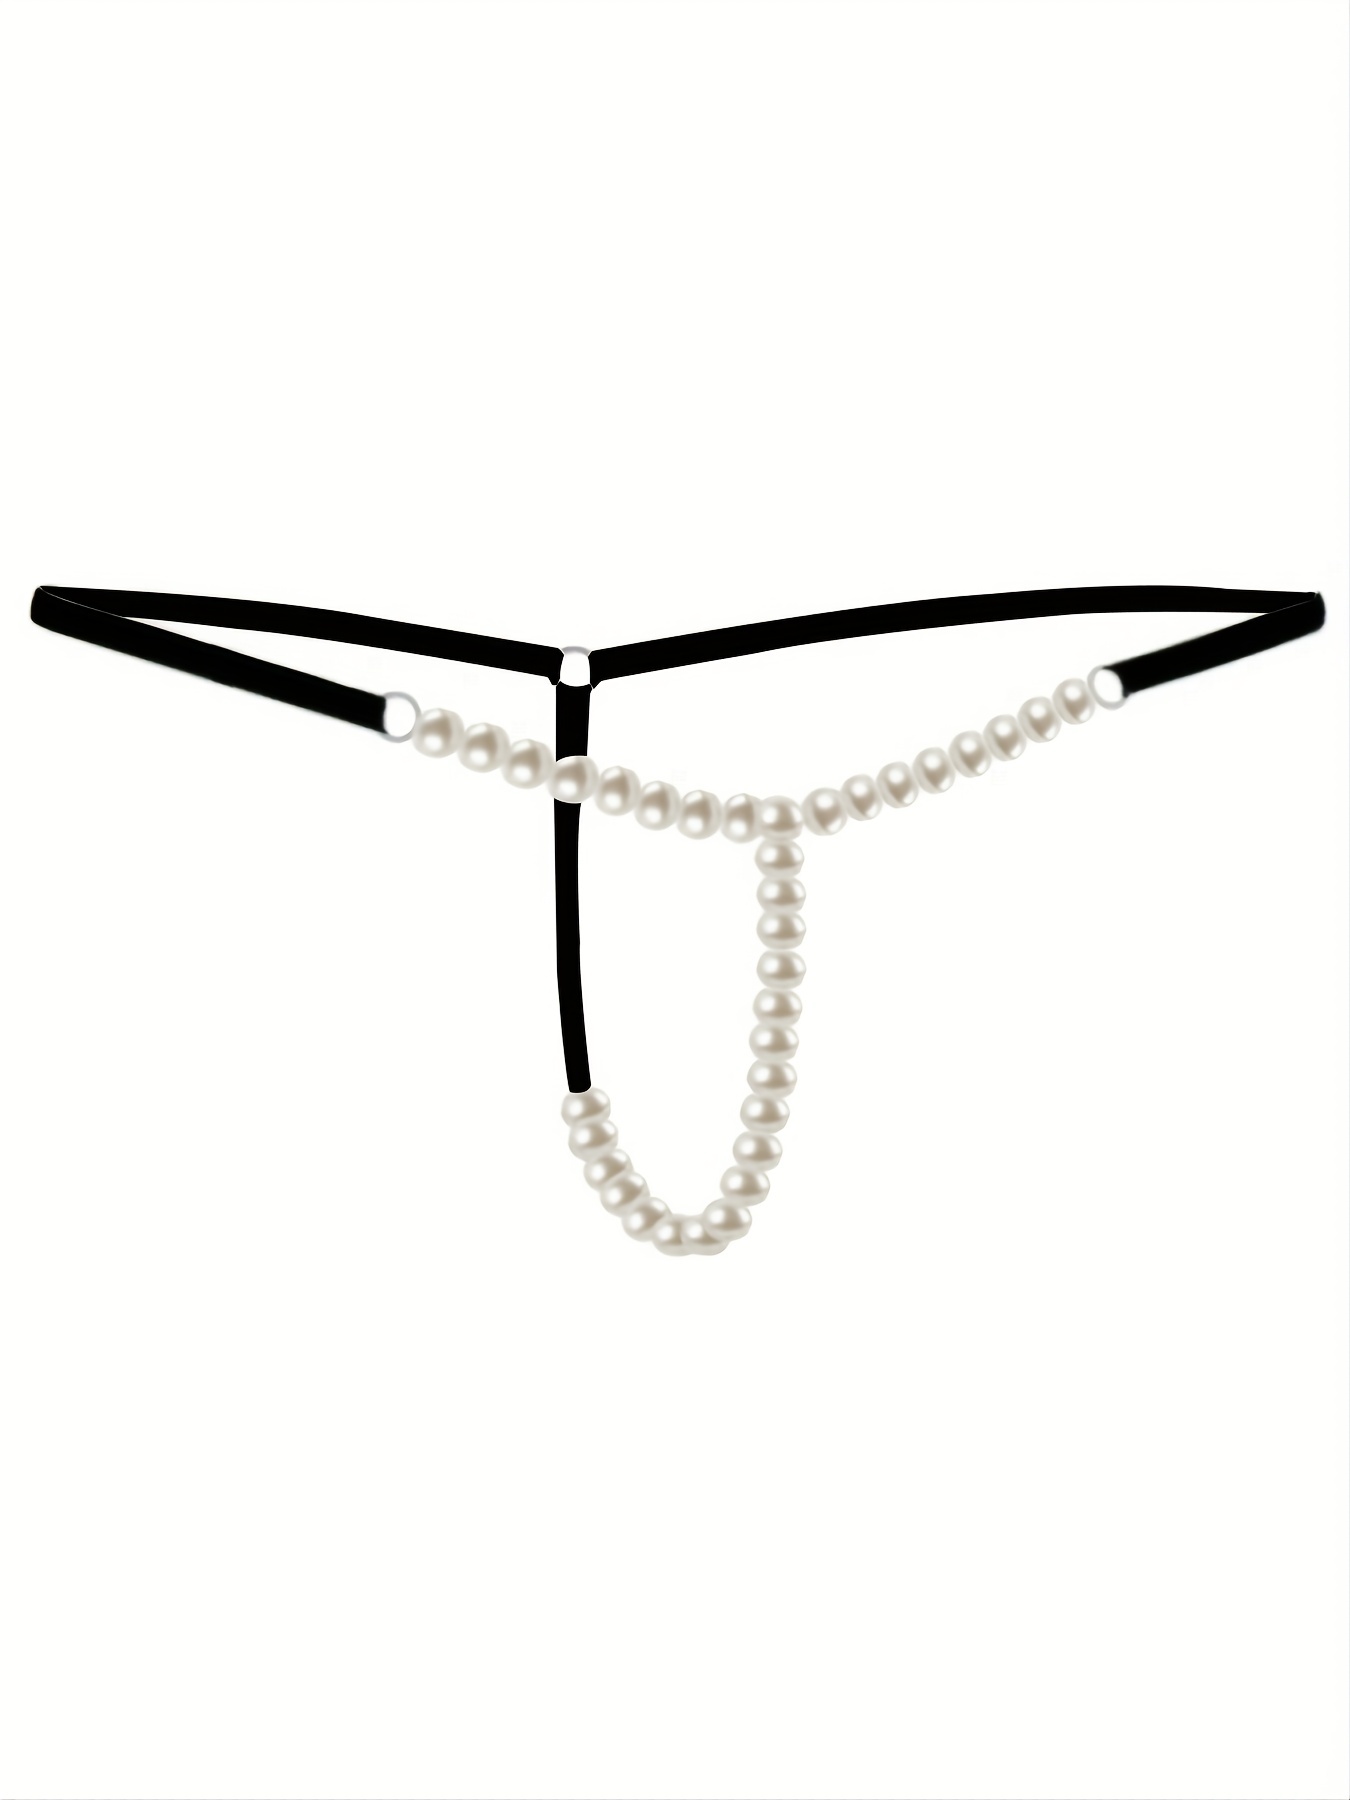 Women Pearl Lingerie G-string Panties T string Thongs Knickers 